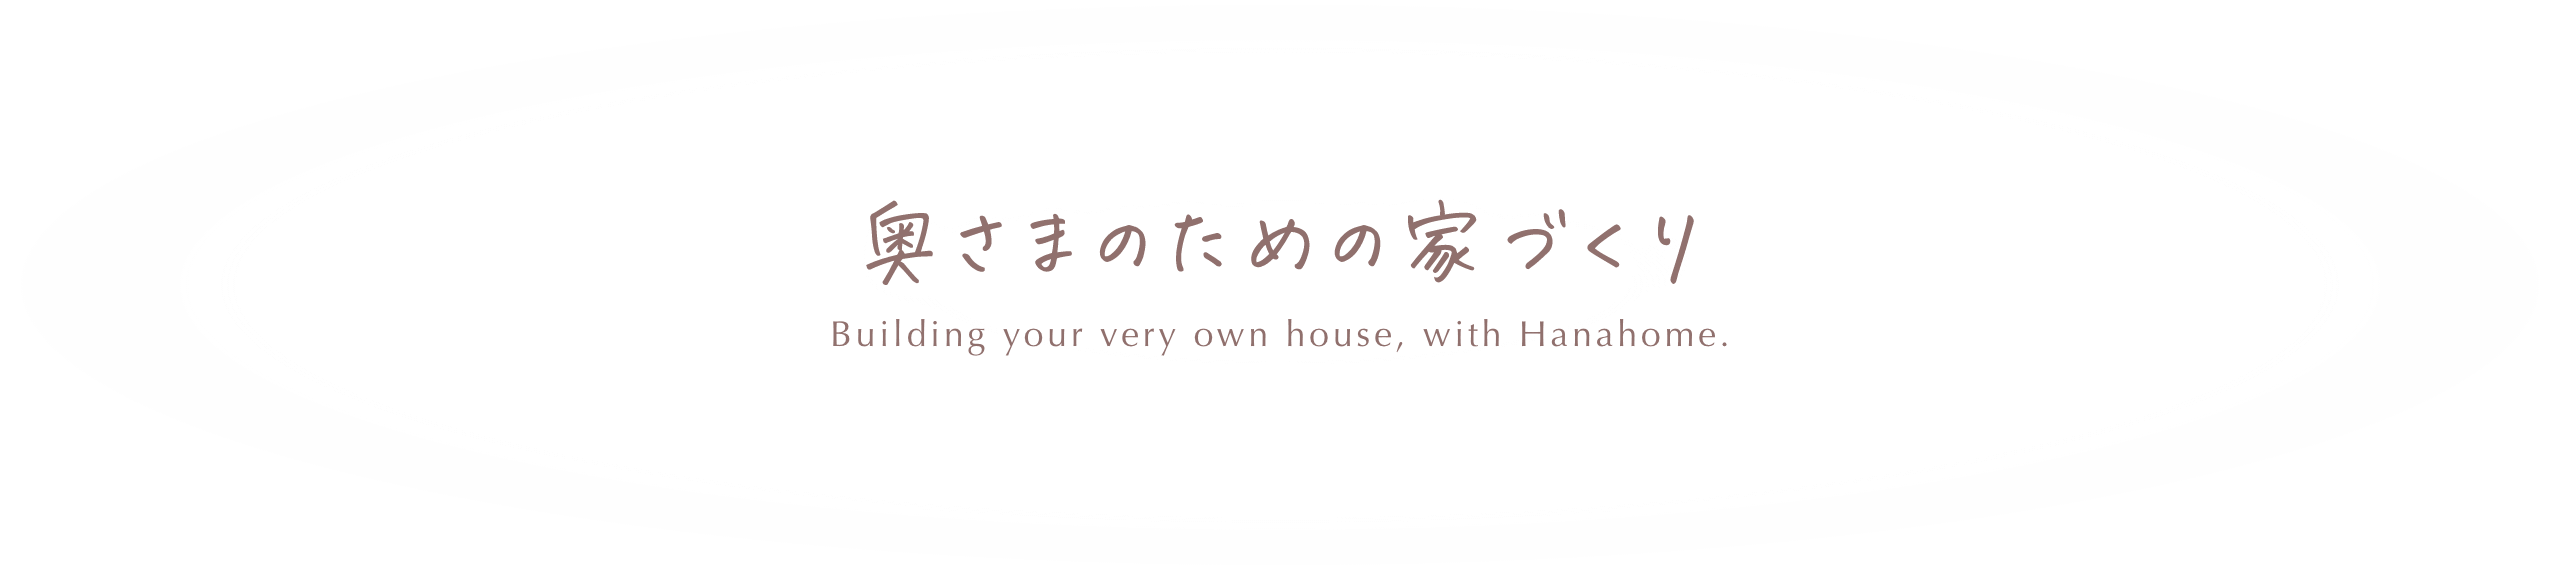 奥様のための家づくり Building your very own house, with Hanahome.